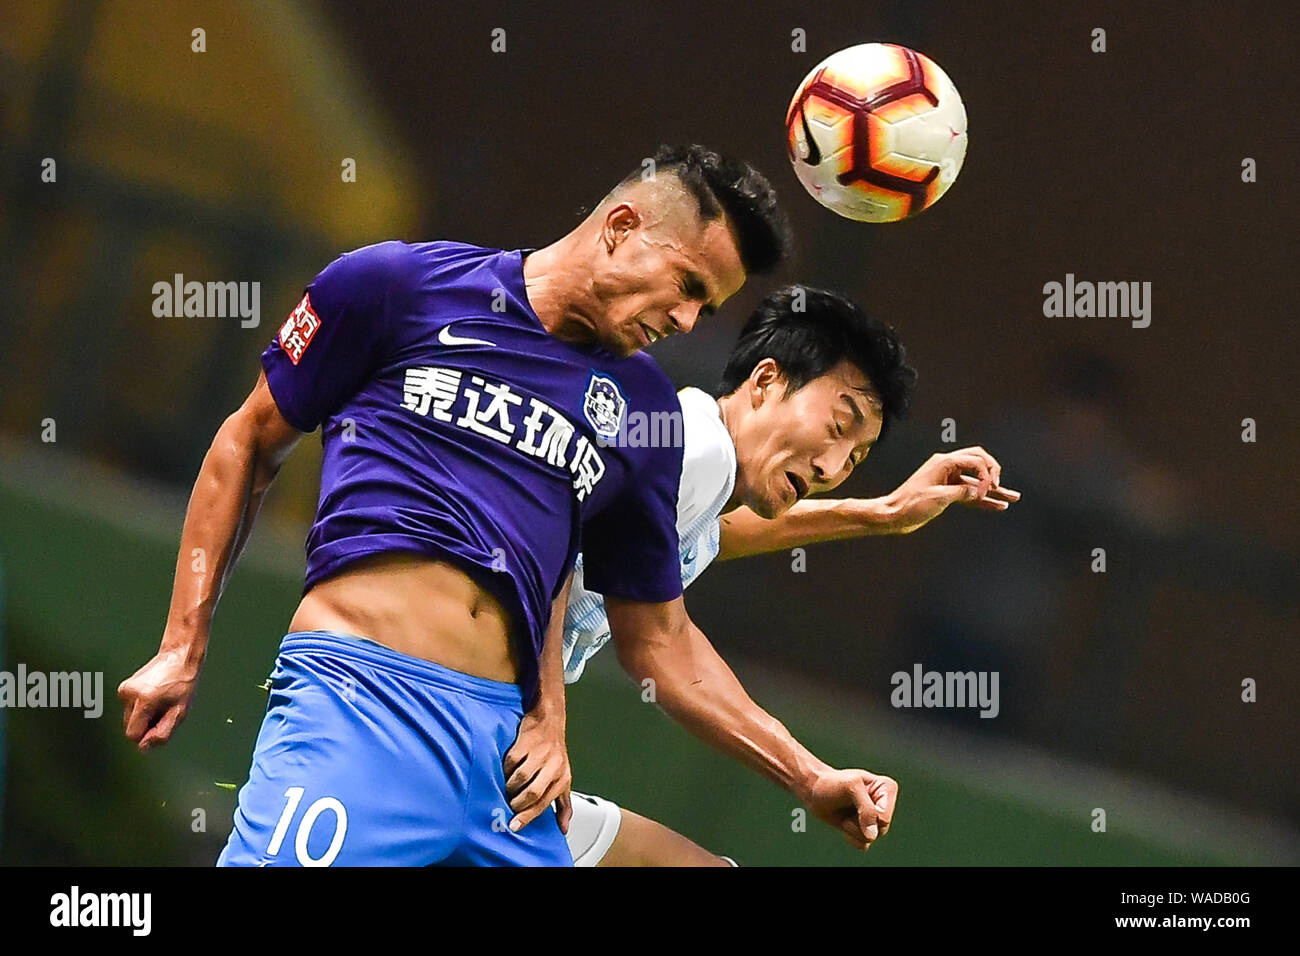 Il calcio brasiliano player Johnathan Aparecido da Silva, quella che indossa No.10 shirt, comunemente noto come Johnathan, di Tianjin TEDA F.C. salta per fare un Foto Stock